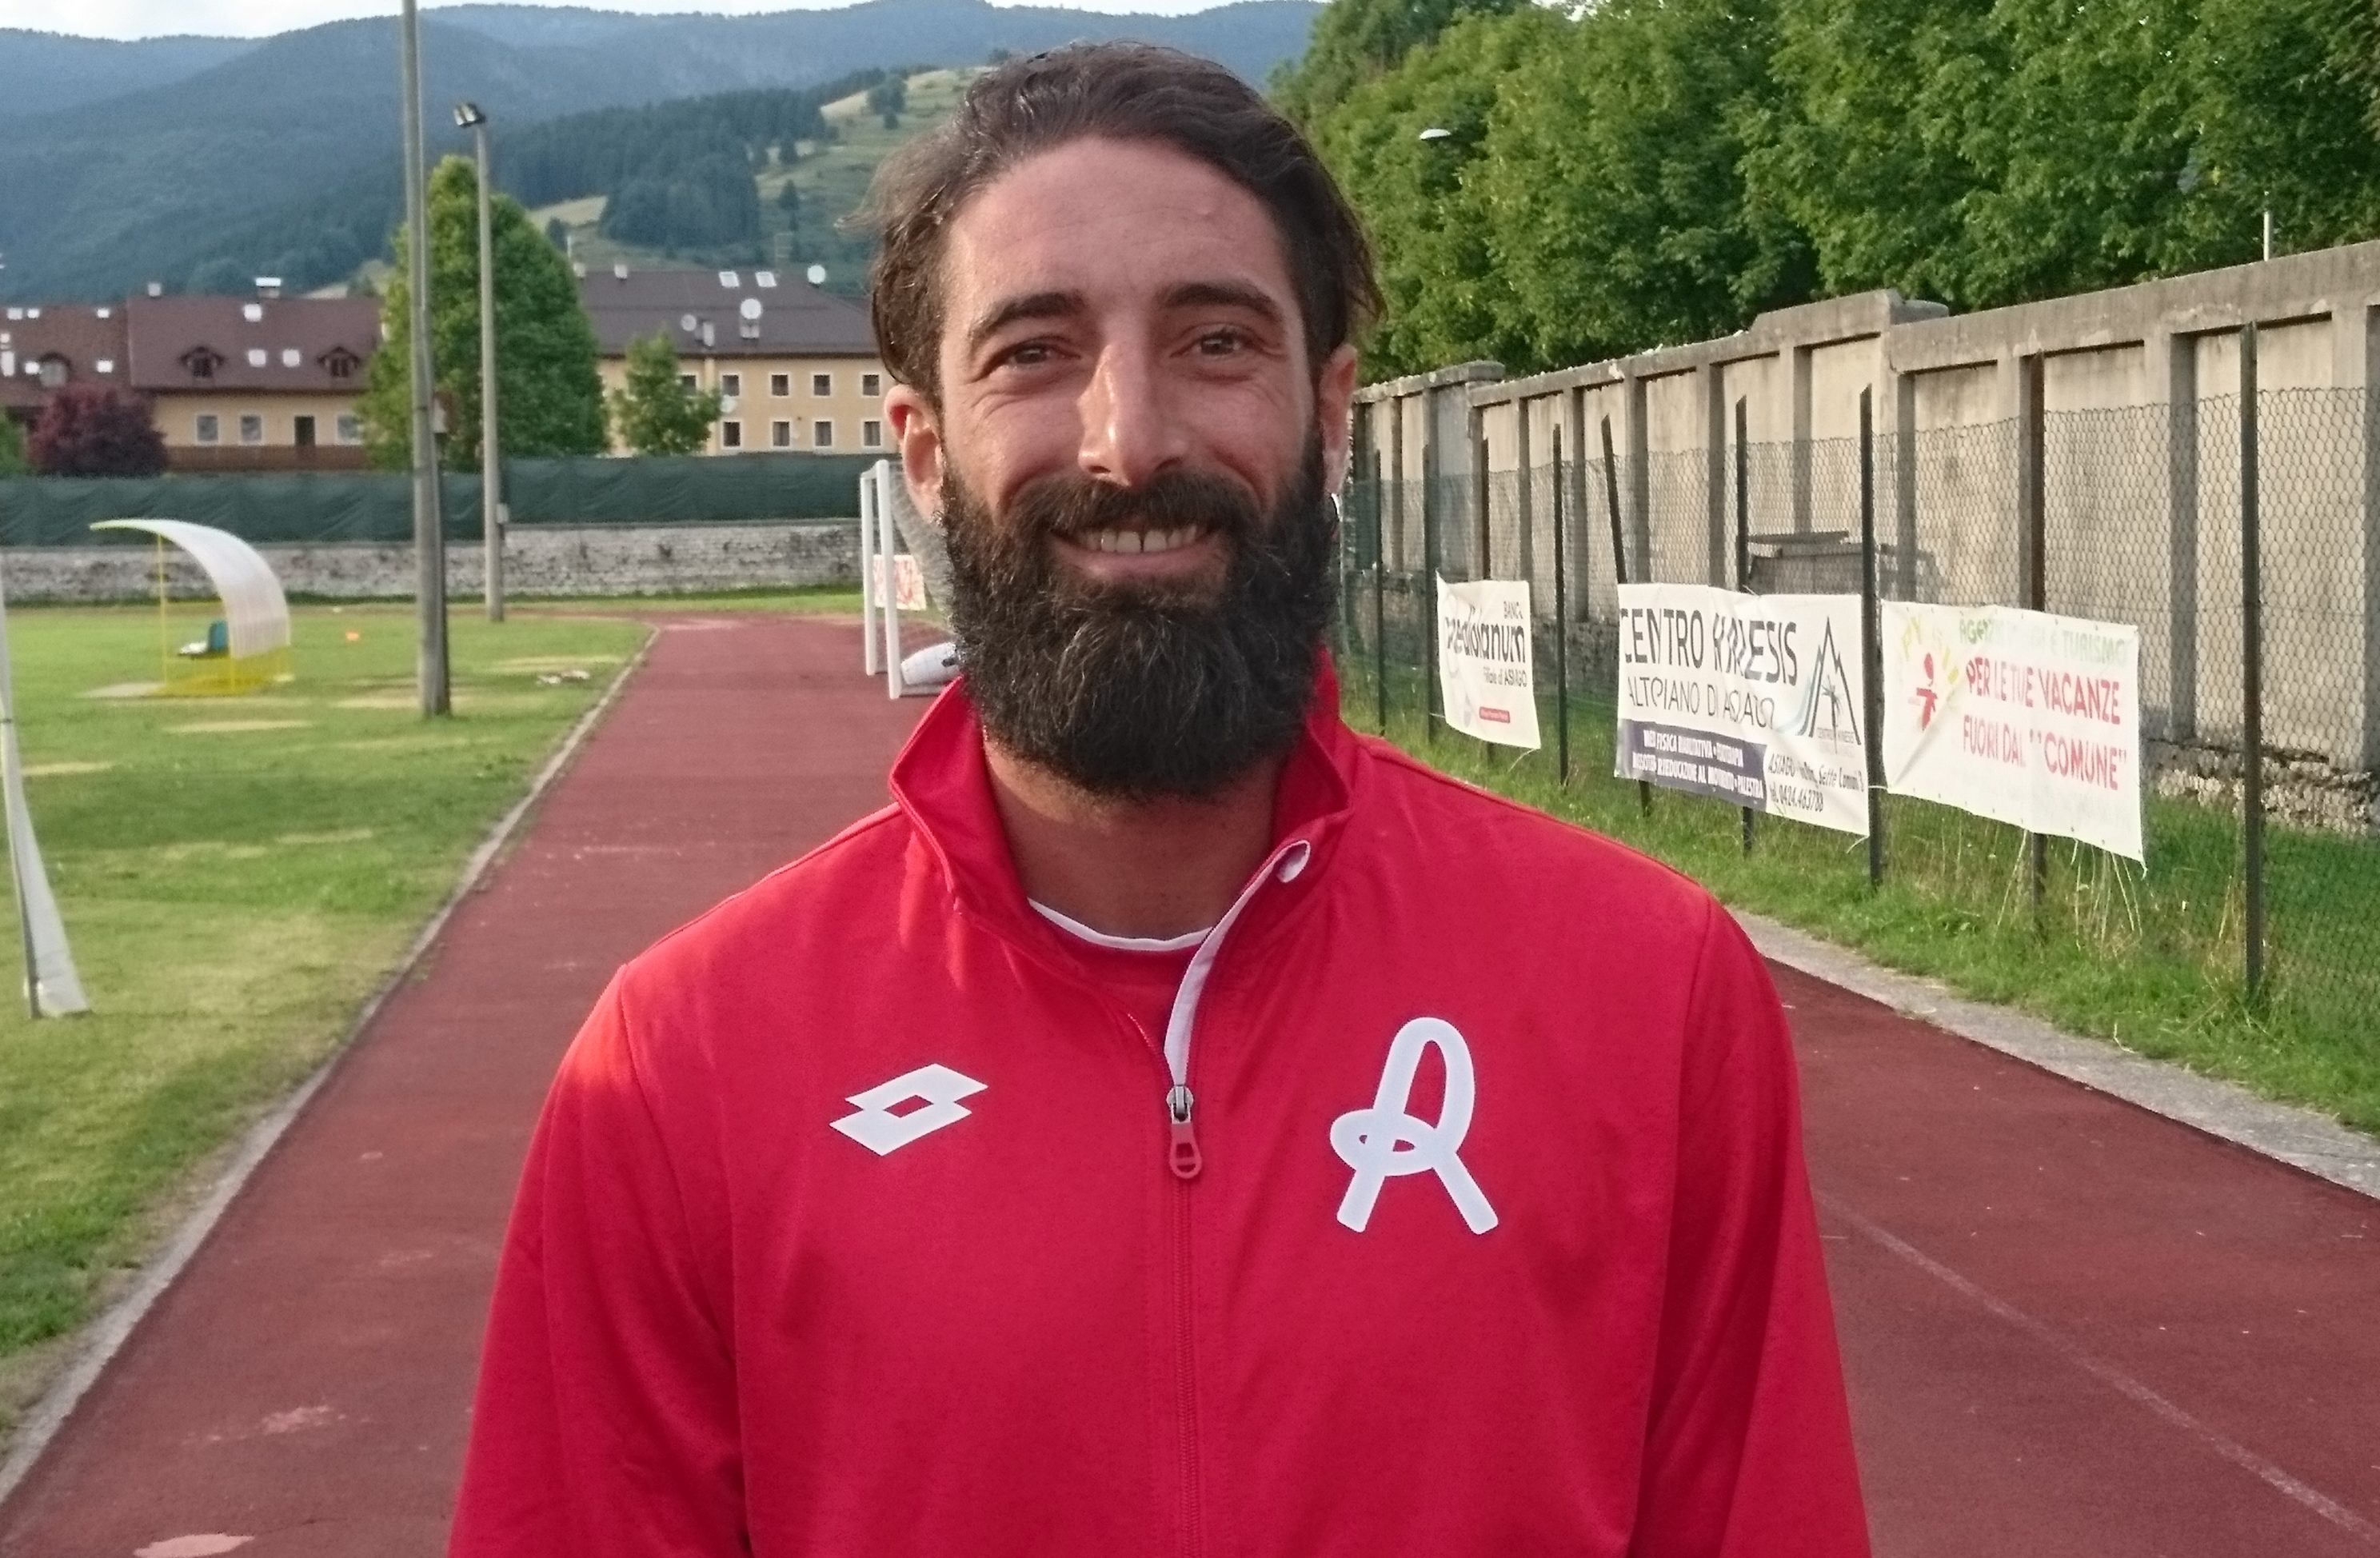 Ufficiale: Alessandro Marotta è un nuovo giocatore del L.R. Vicenza